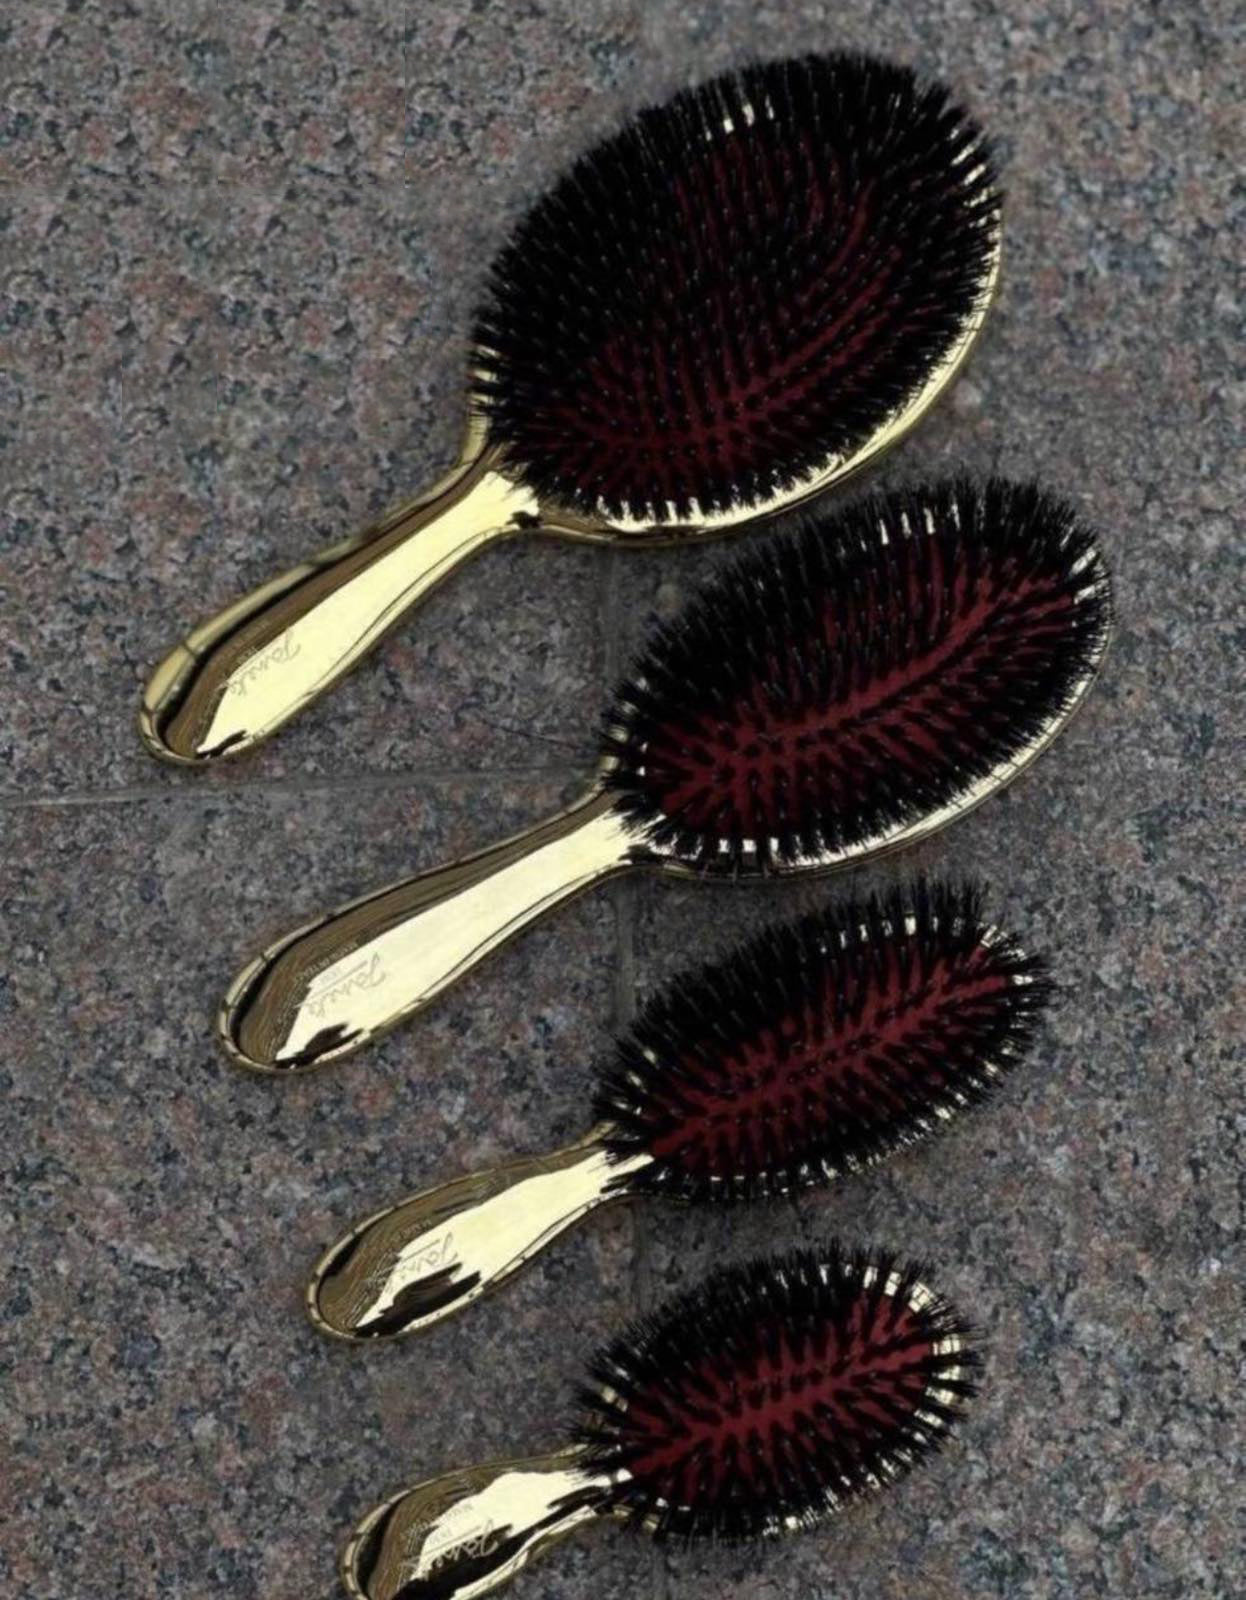 Щітка для волосся з натуральною щетиною - Janeke Gold Hairbrush L